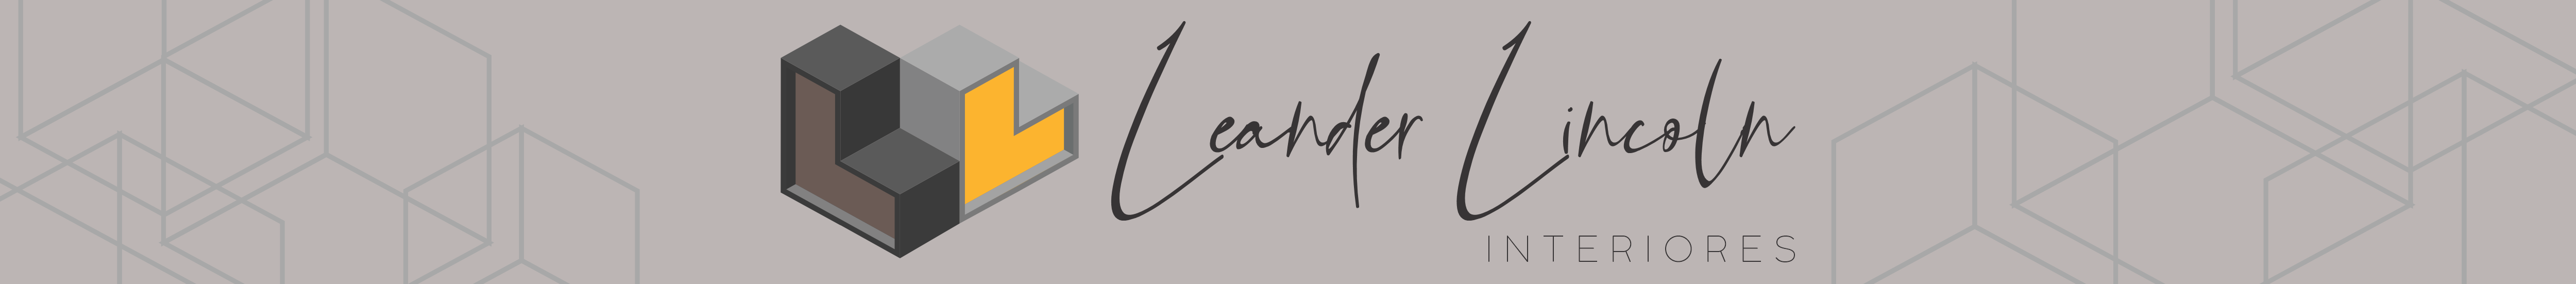 Leander Lincoln Interiores's profile banner